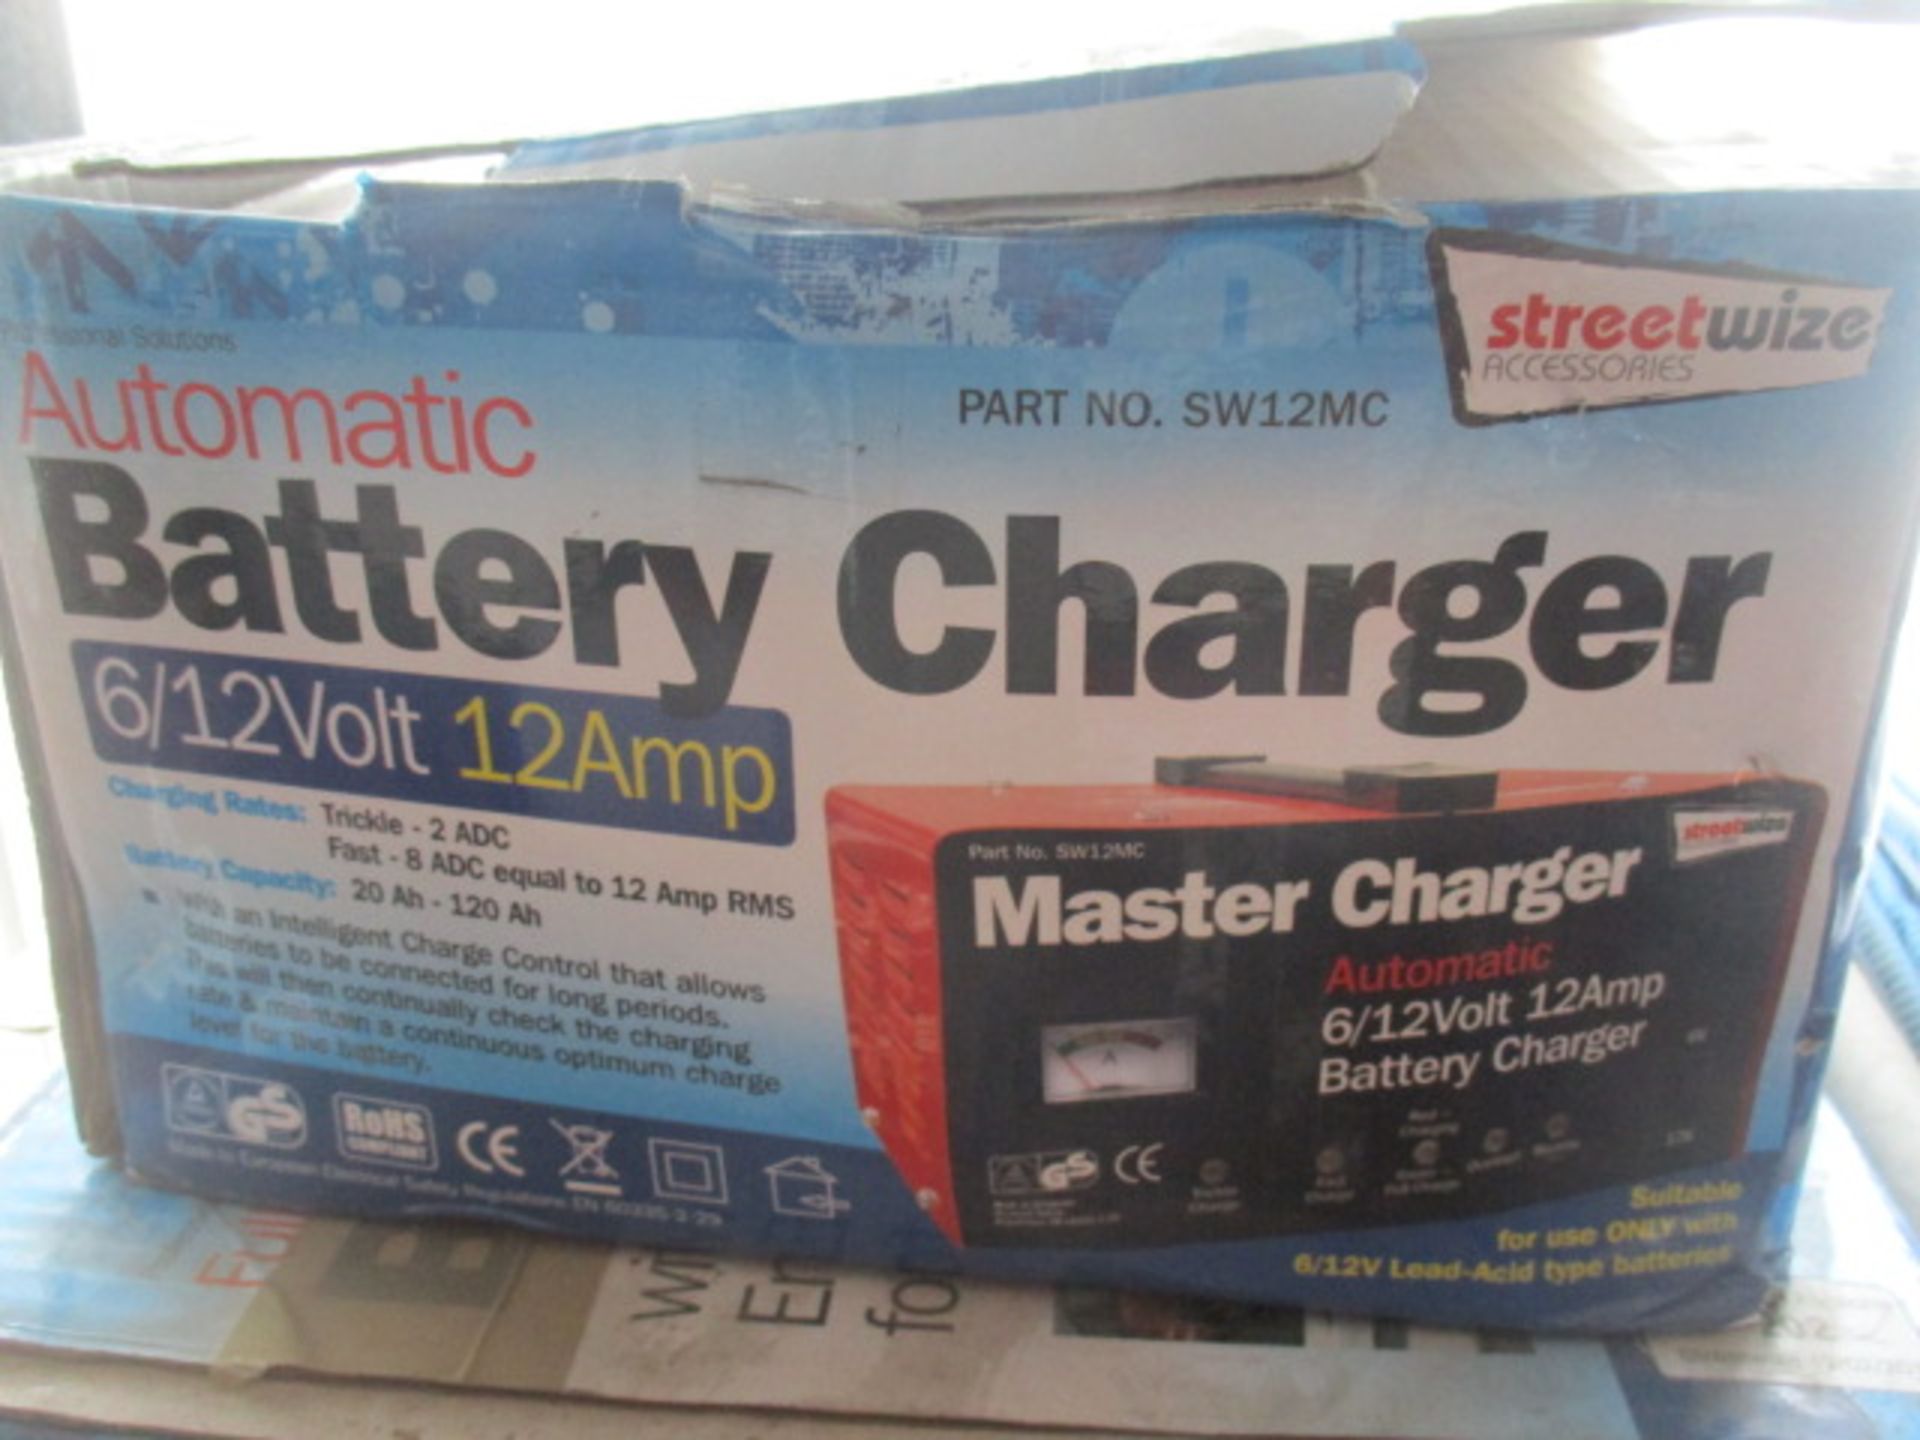 6/12 v olt master charger boxed rrp £49.99